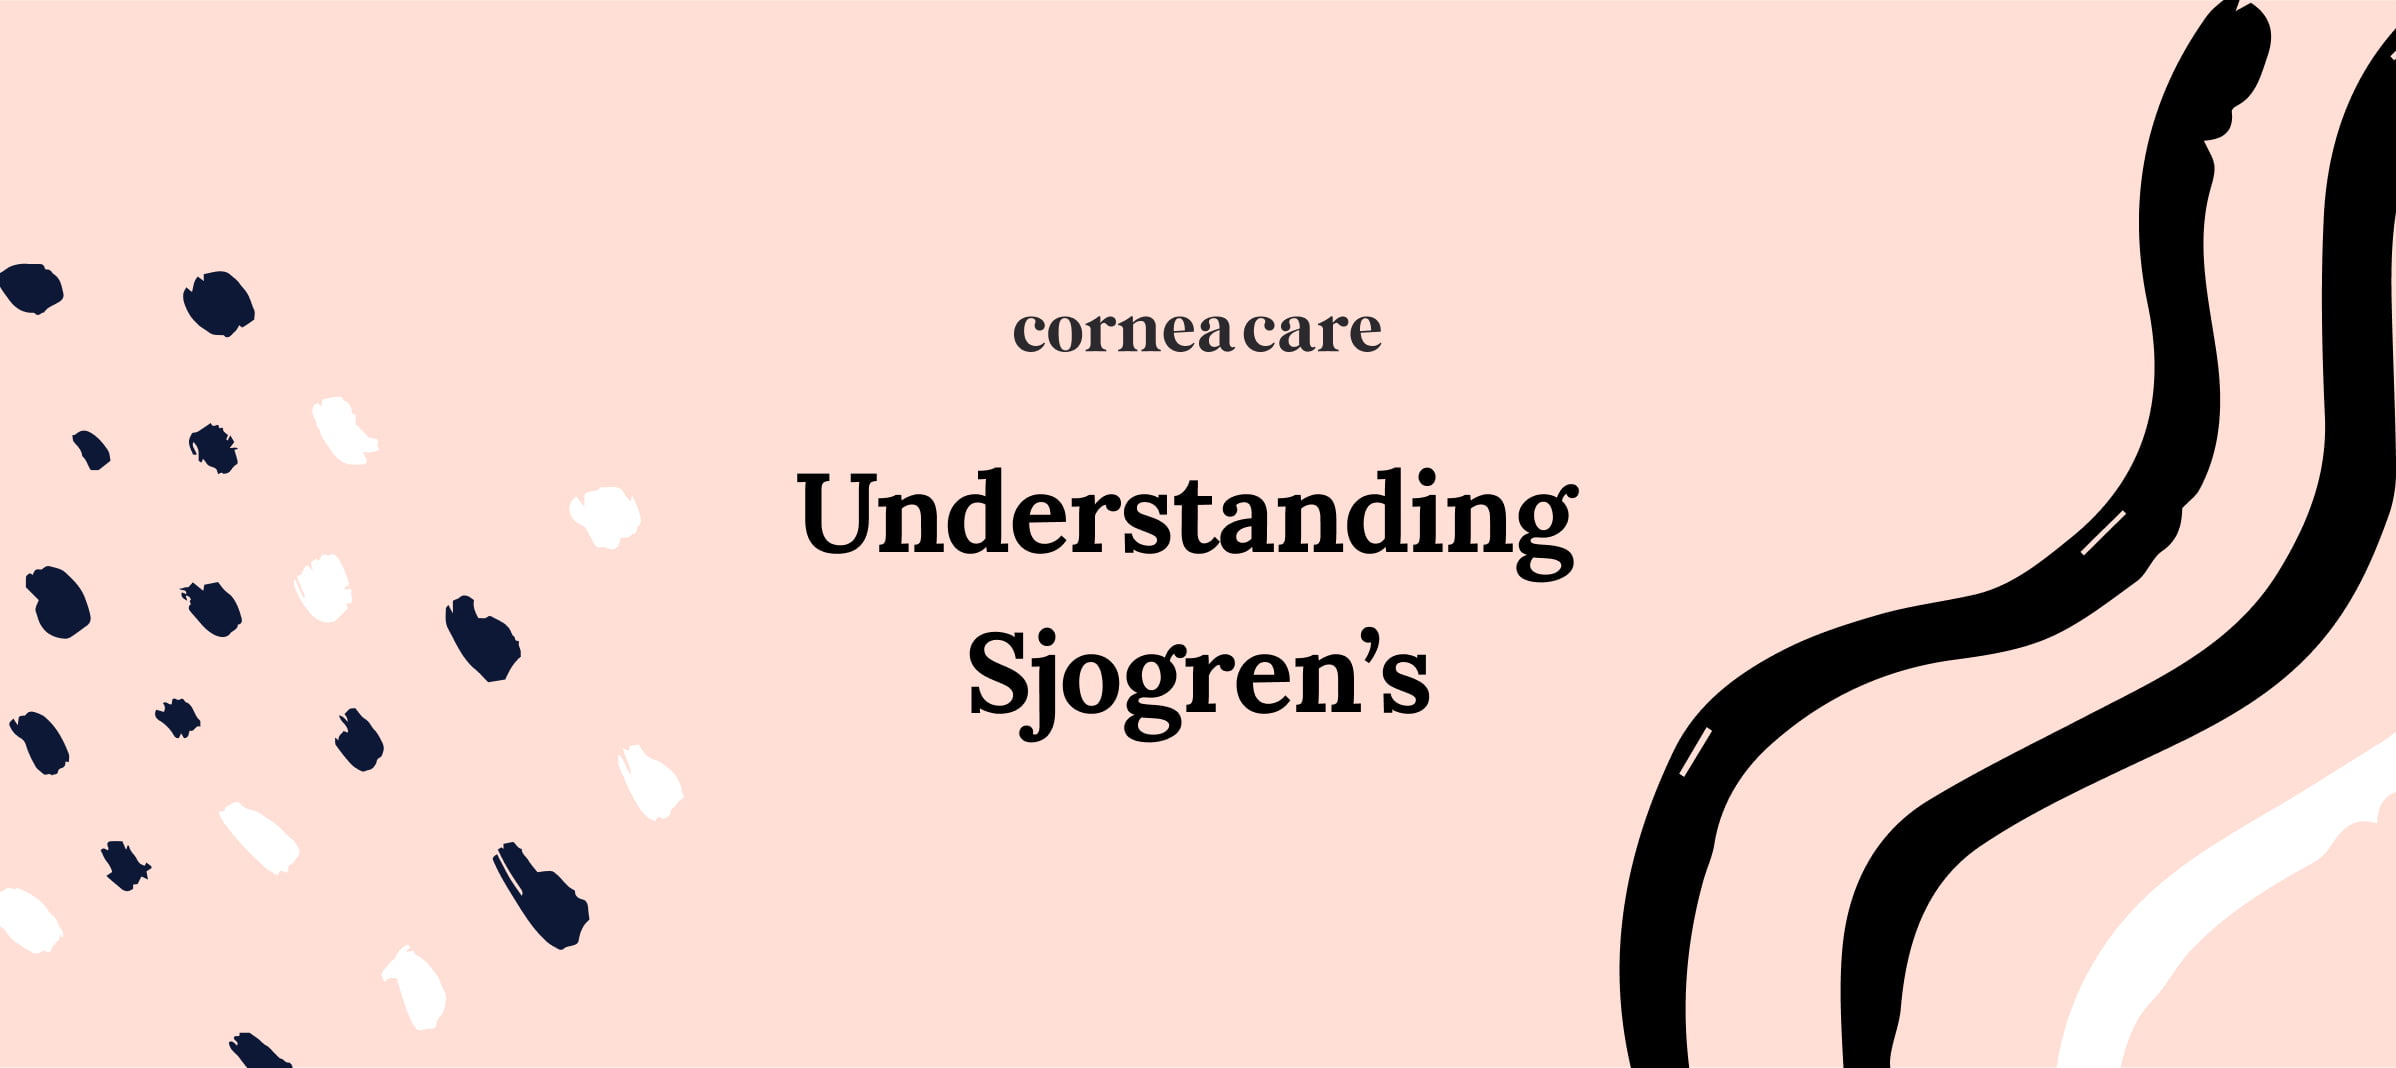 Sjogren’s Syndrome and Dry Eye Disease